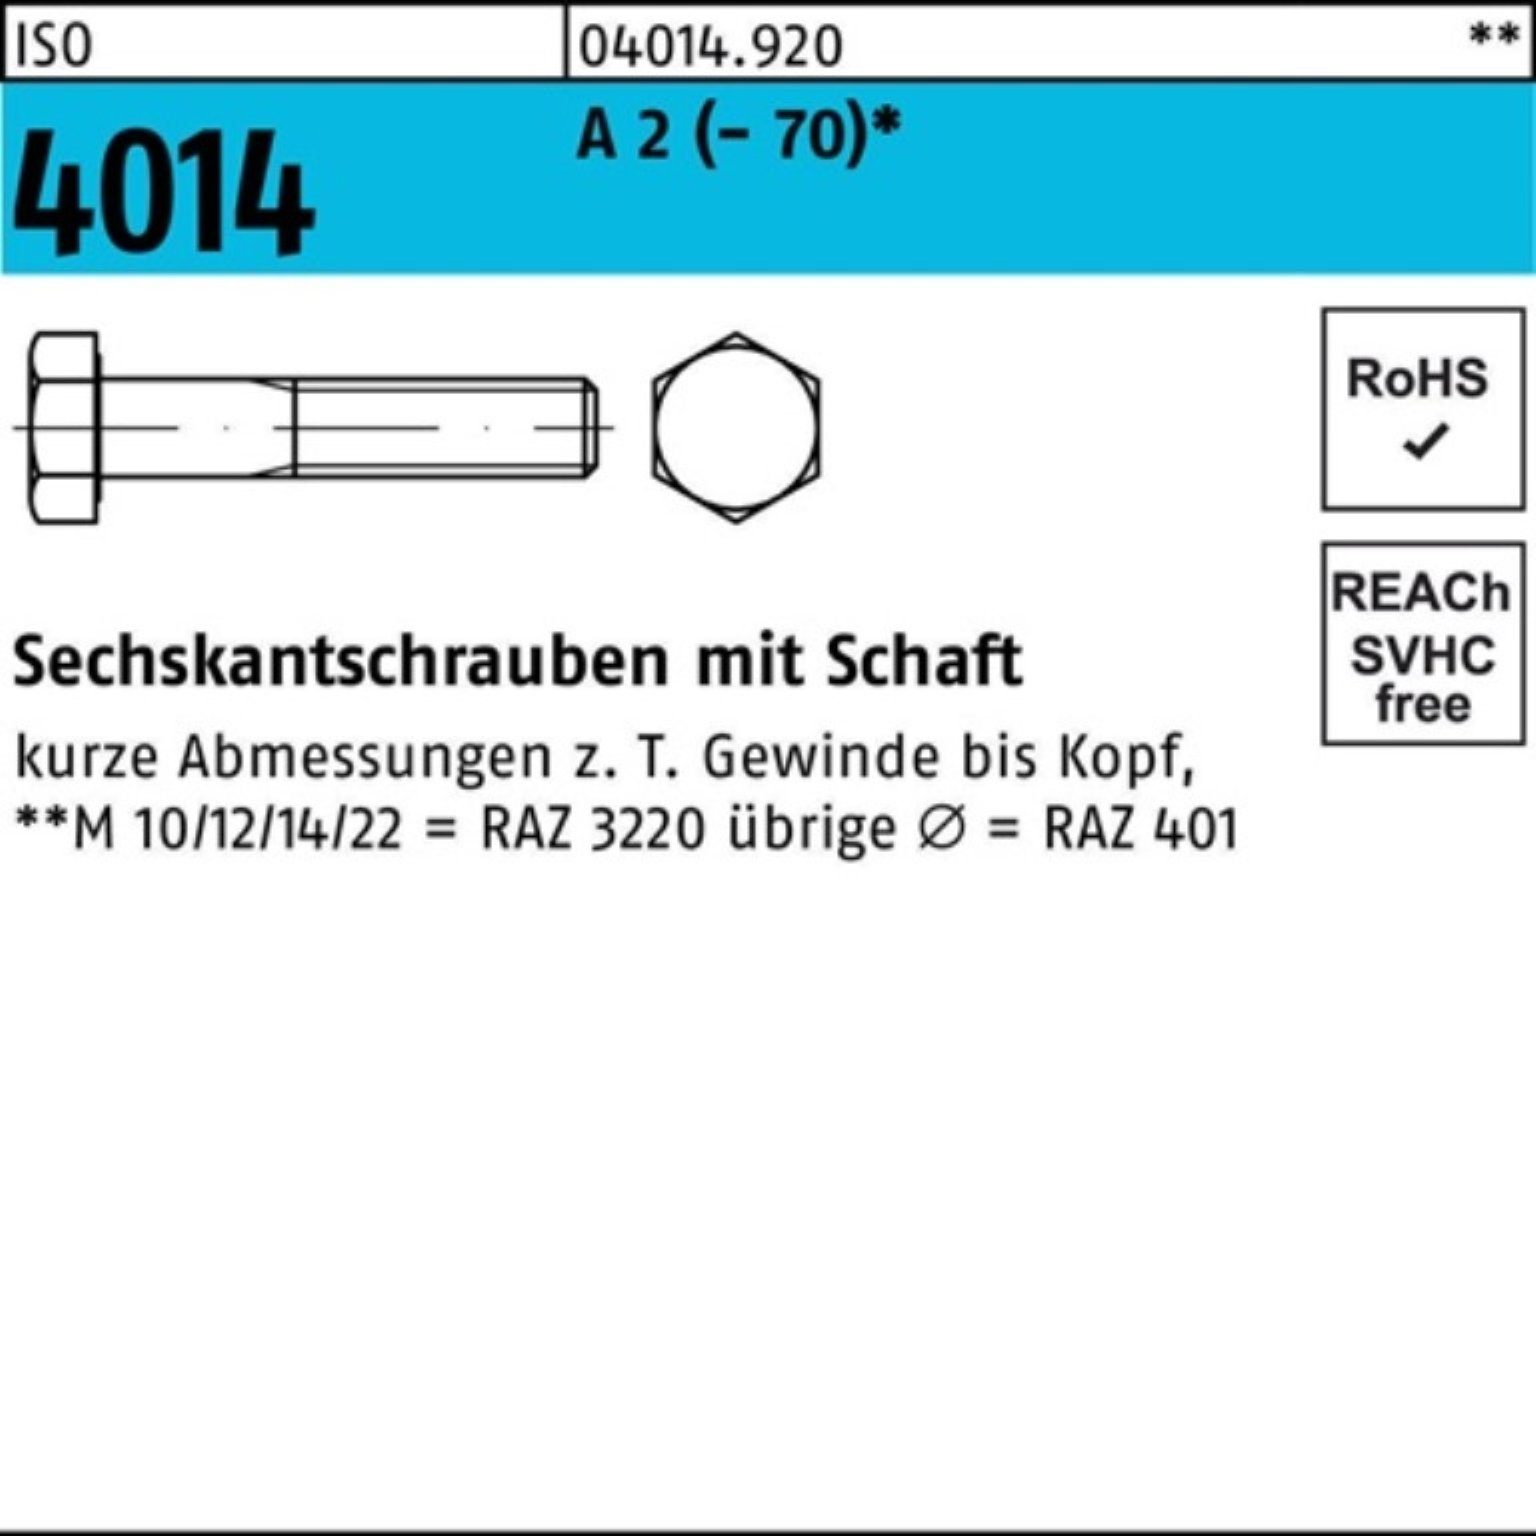 Schaft Pack 4014 A ISO 2 Sechskantschraube Bufab 100er Sechskantschraube (70) St 60 50 M14x